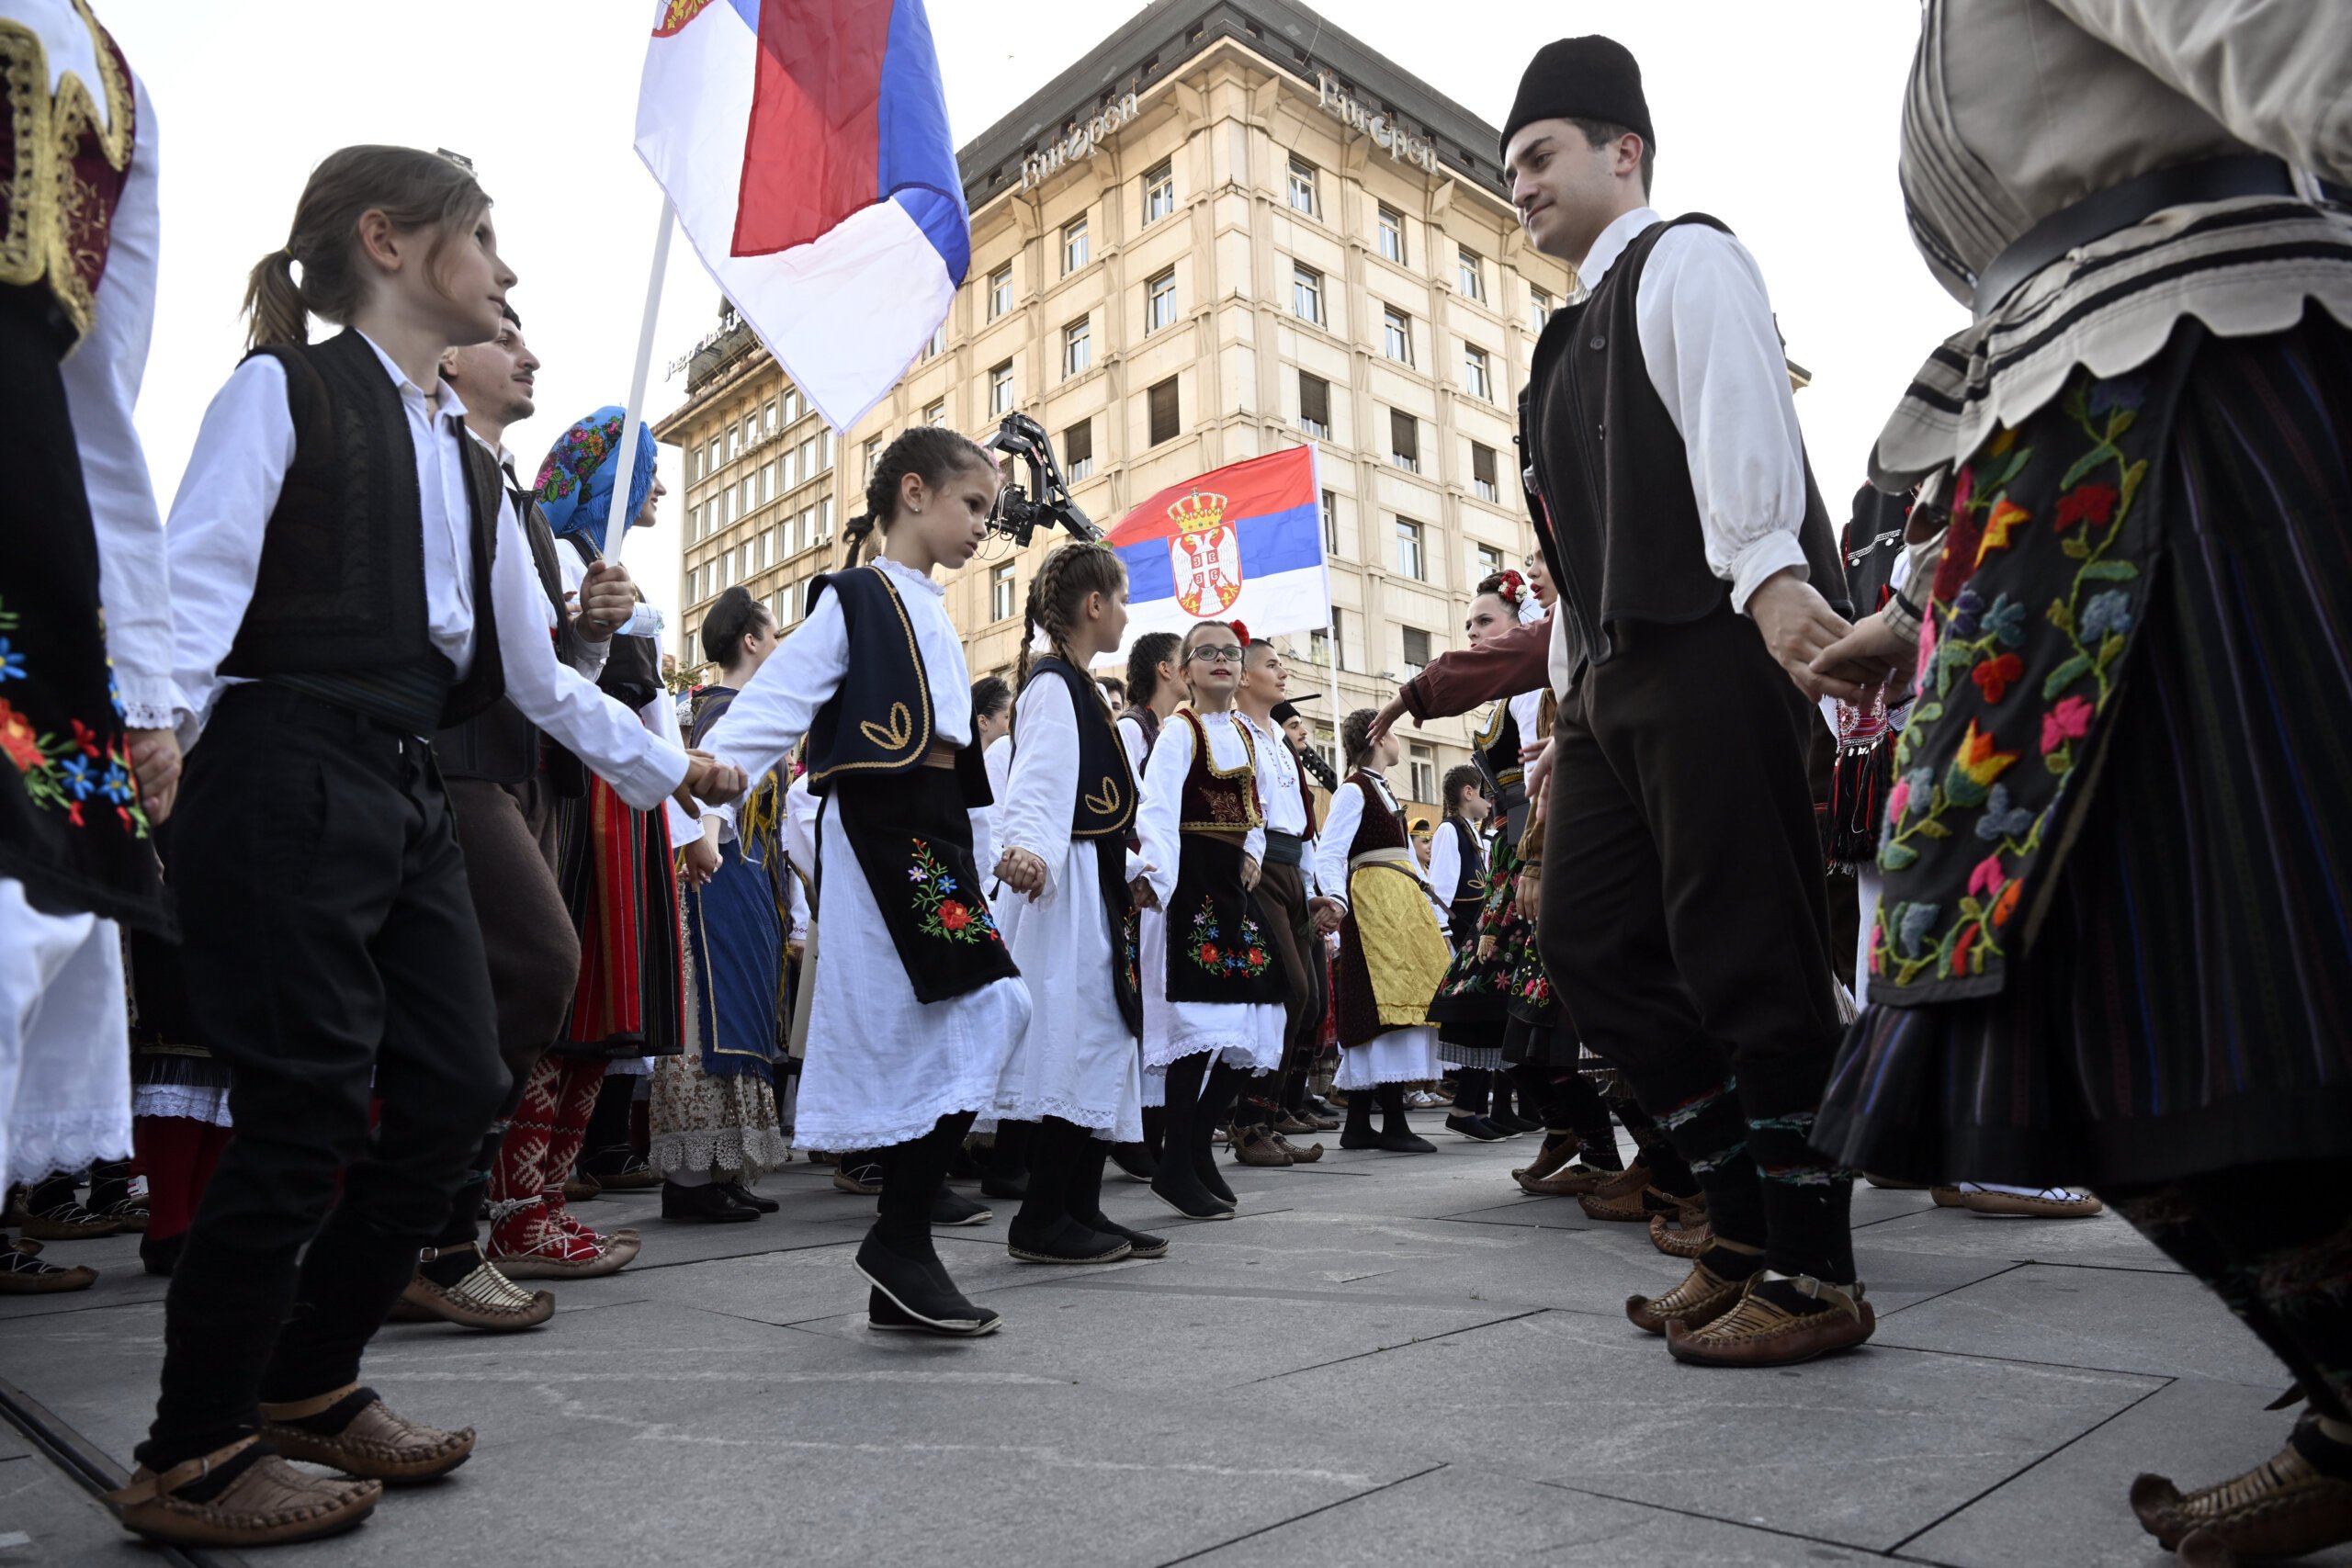 (FOTO) Kako je izgledala manifestacija "Jedan narod, jedan sabor - Srbija i Srpska" na Trgu republike u fotografijama? 13